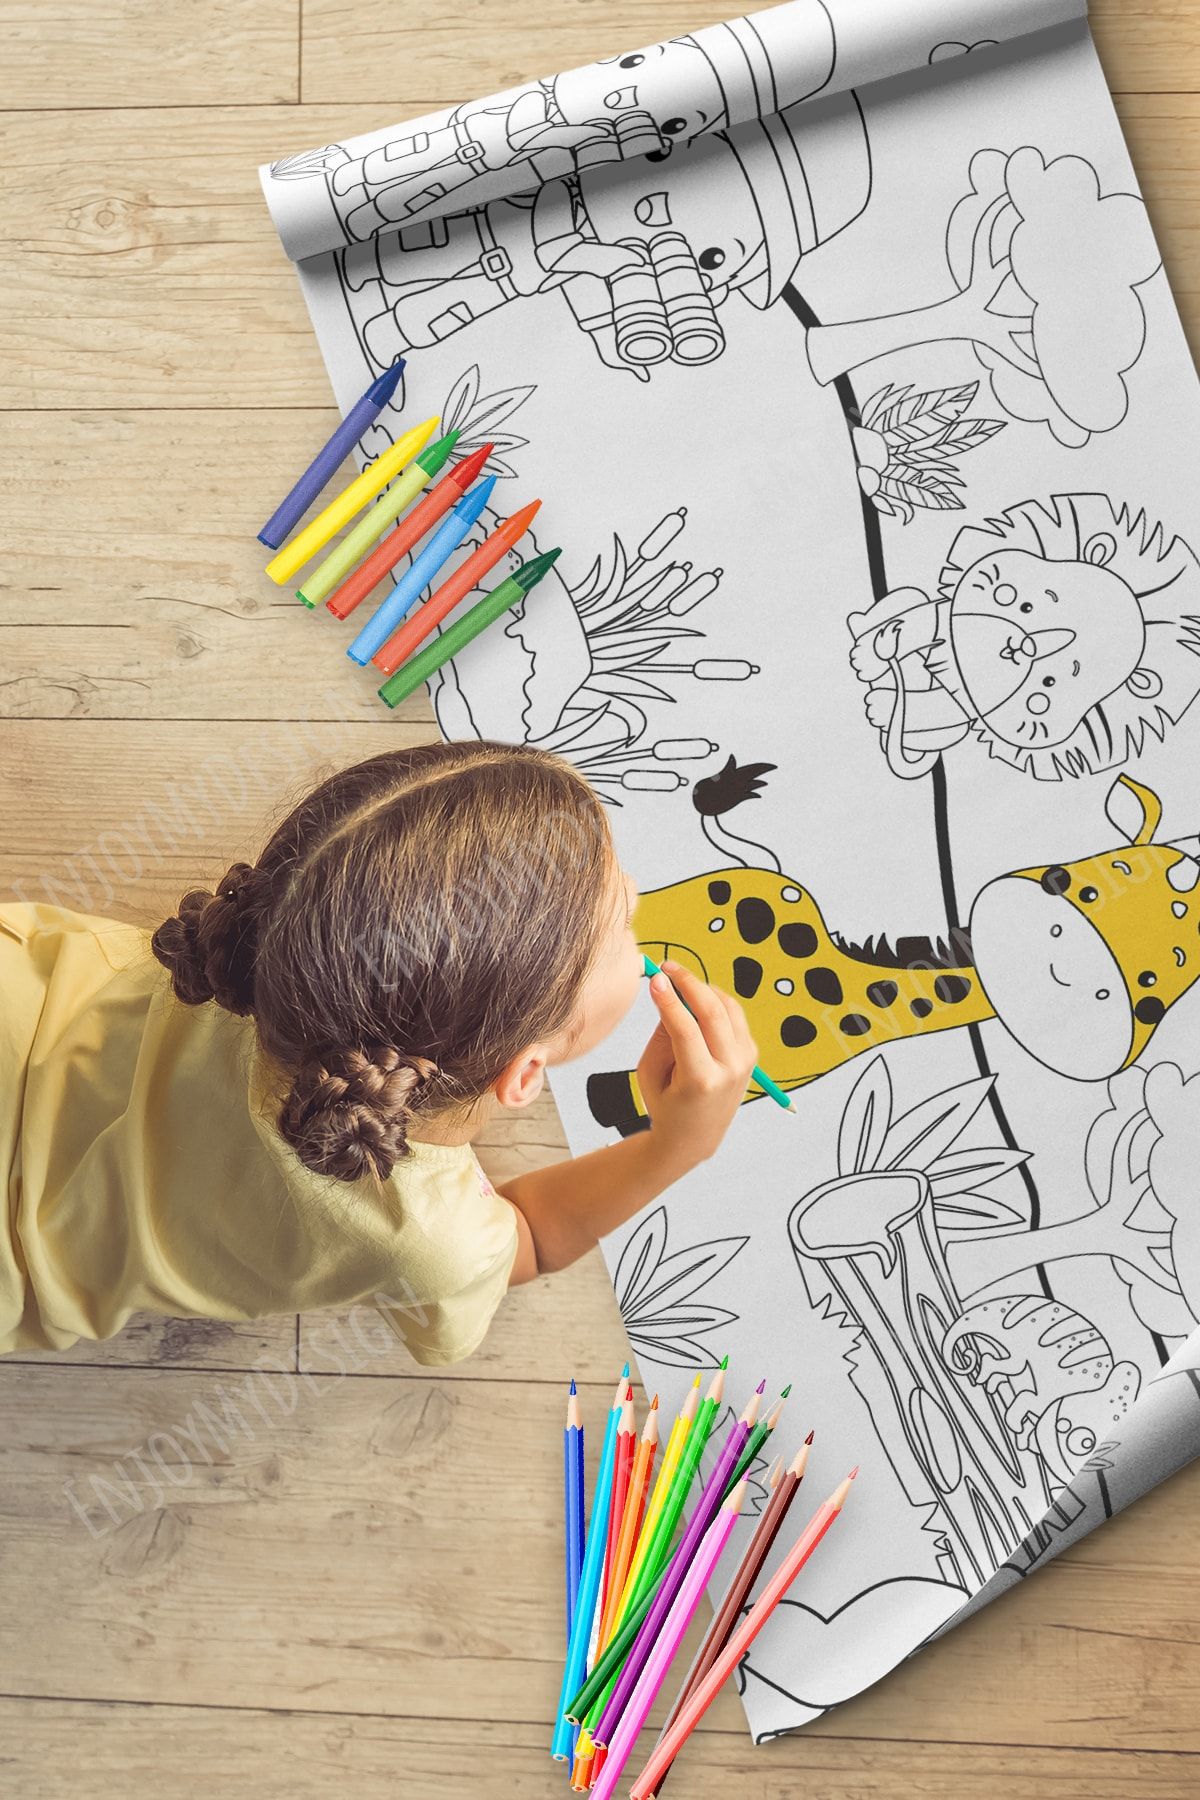 Enjoymydesign Boya Rulo Aktivite Kağıt Boyama Kağıdı 2.5 Metre Rulo - Bebek ve Çocuk için Eğitici Boyama Kağıdı